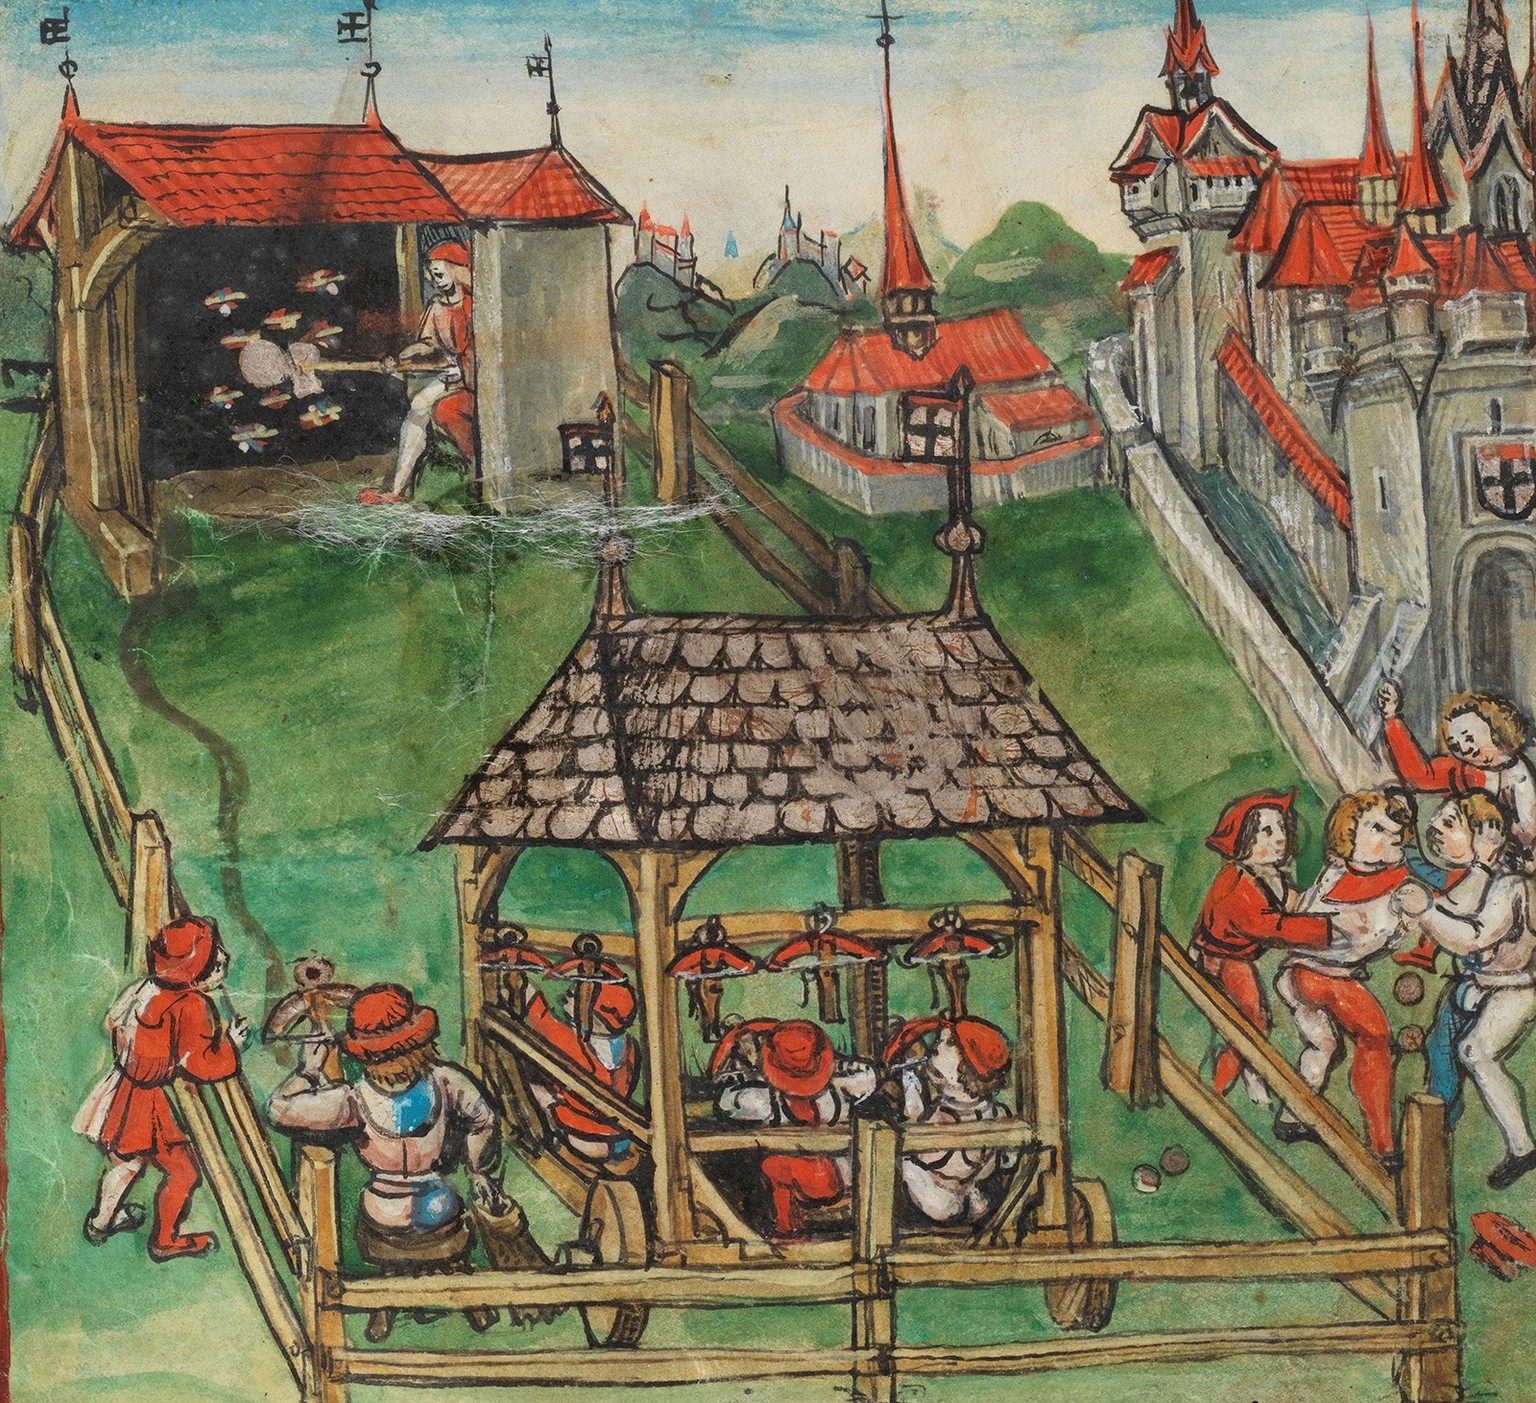 Schützenfest in Konstanz von 1458. Abbildung aus der Eidgenössischen Chronik des Luzerners Diebold Schilling, um 1513.
https://www.e-codices.unifr.ch/de/kol/S0023-2/557